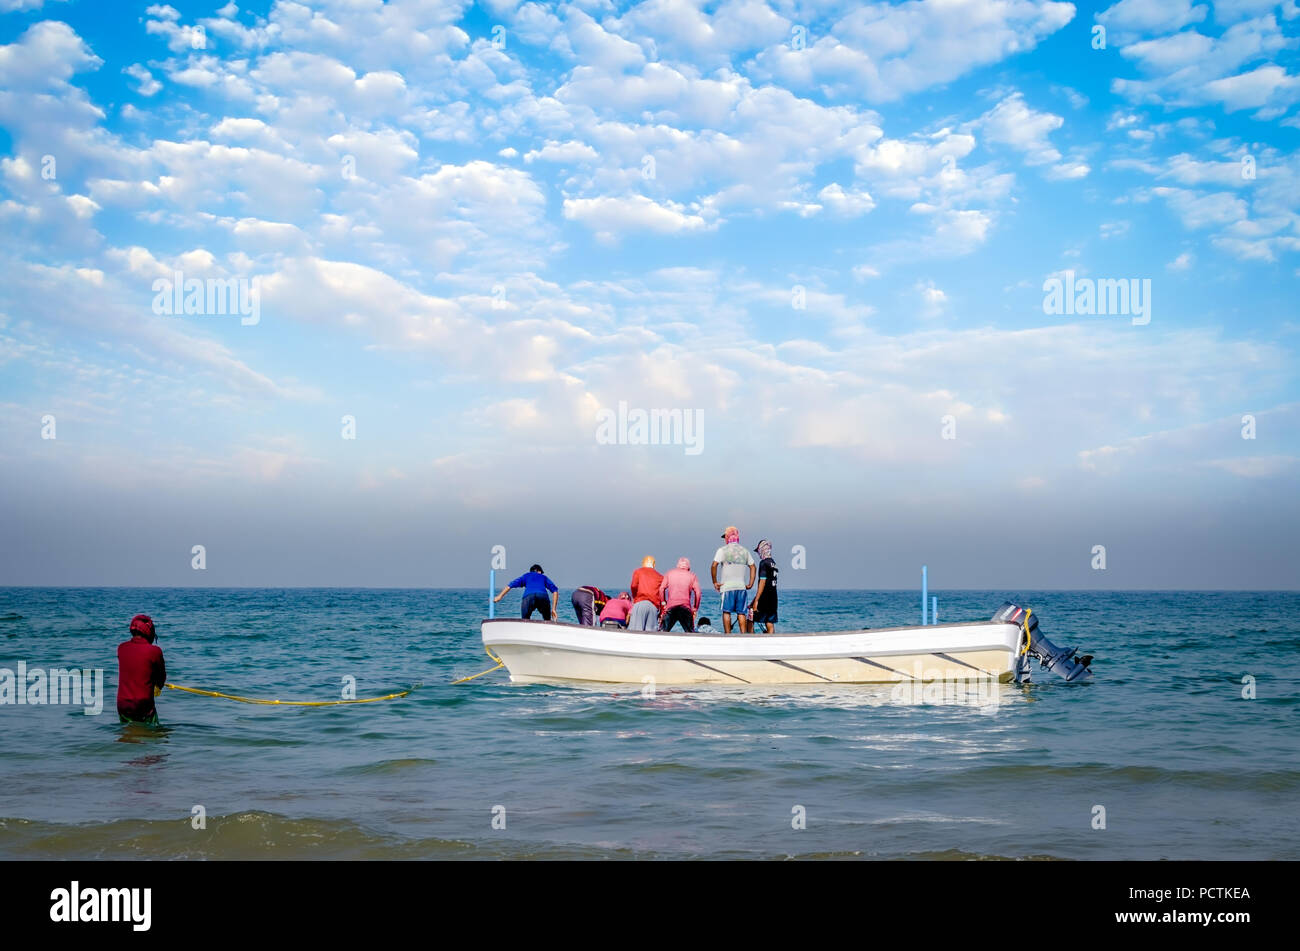 Gruppo di pescatori cercando di trascinare la rete piena di pesci alla barca, mentre uno tiene la corda per non consentire la barca ad allontanarsi. Foto Stock